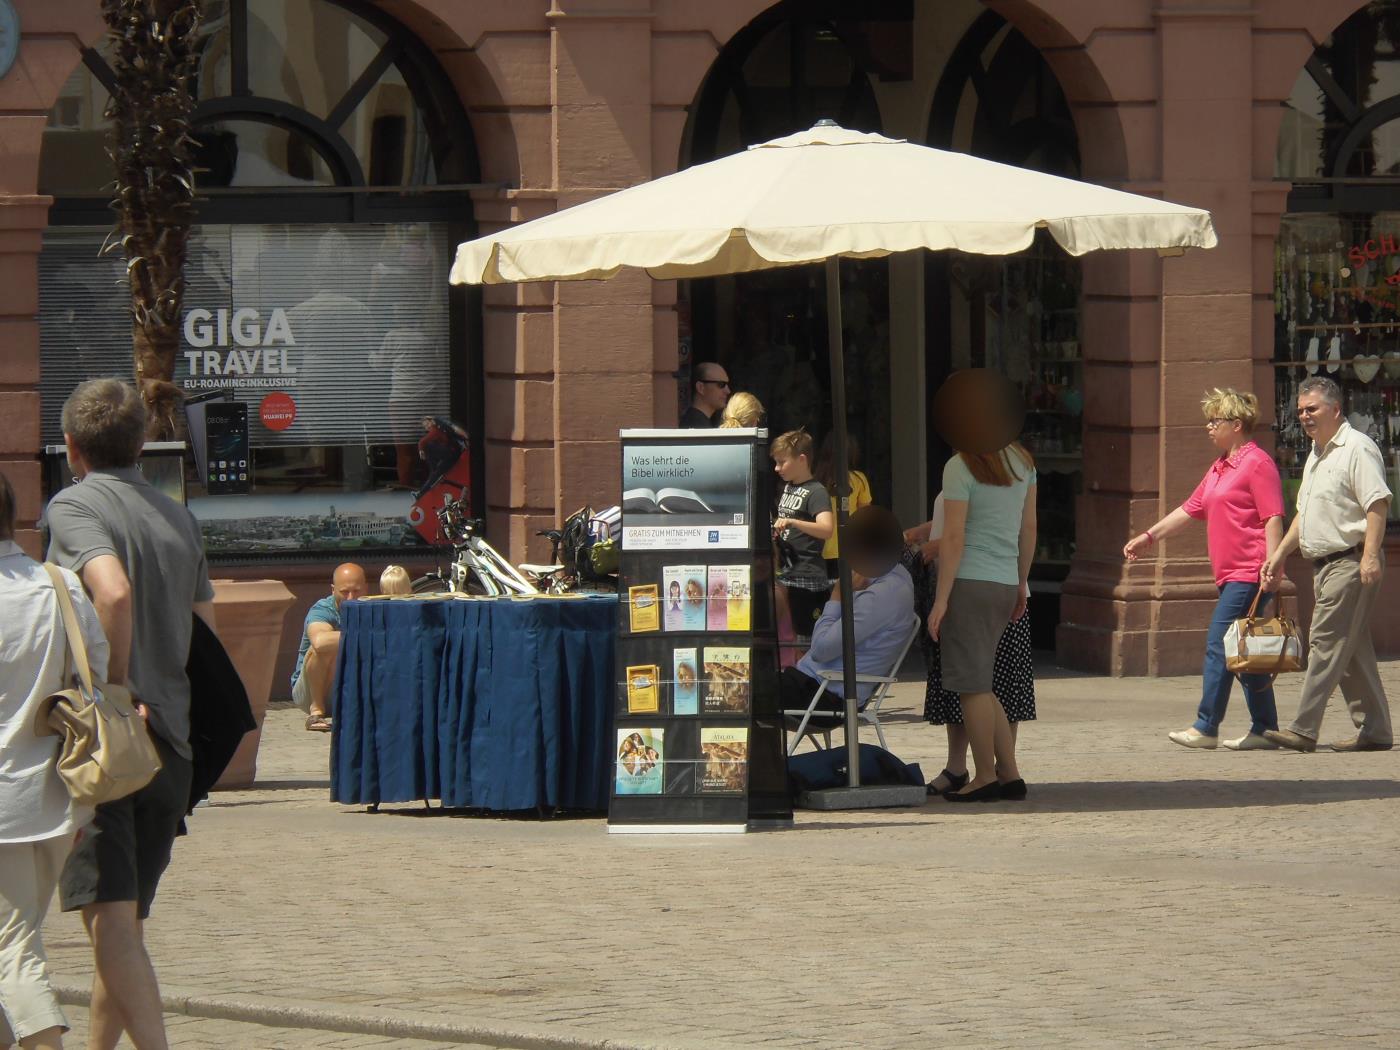 Jehovas Zeugen in Speyer klein mit Hut